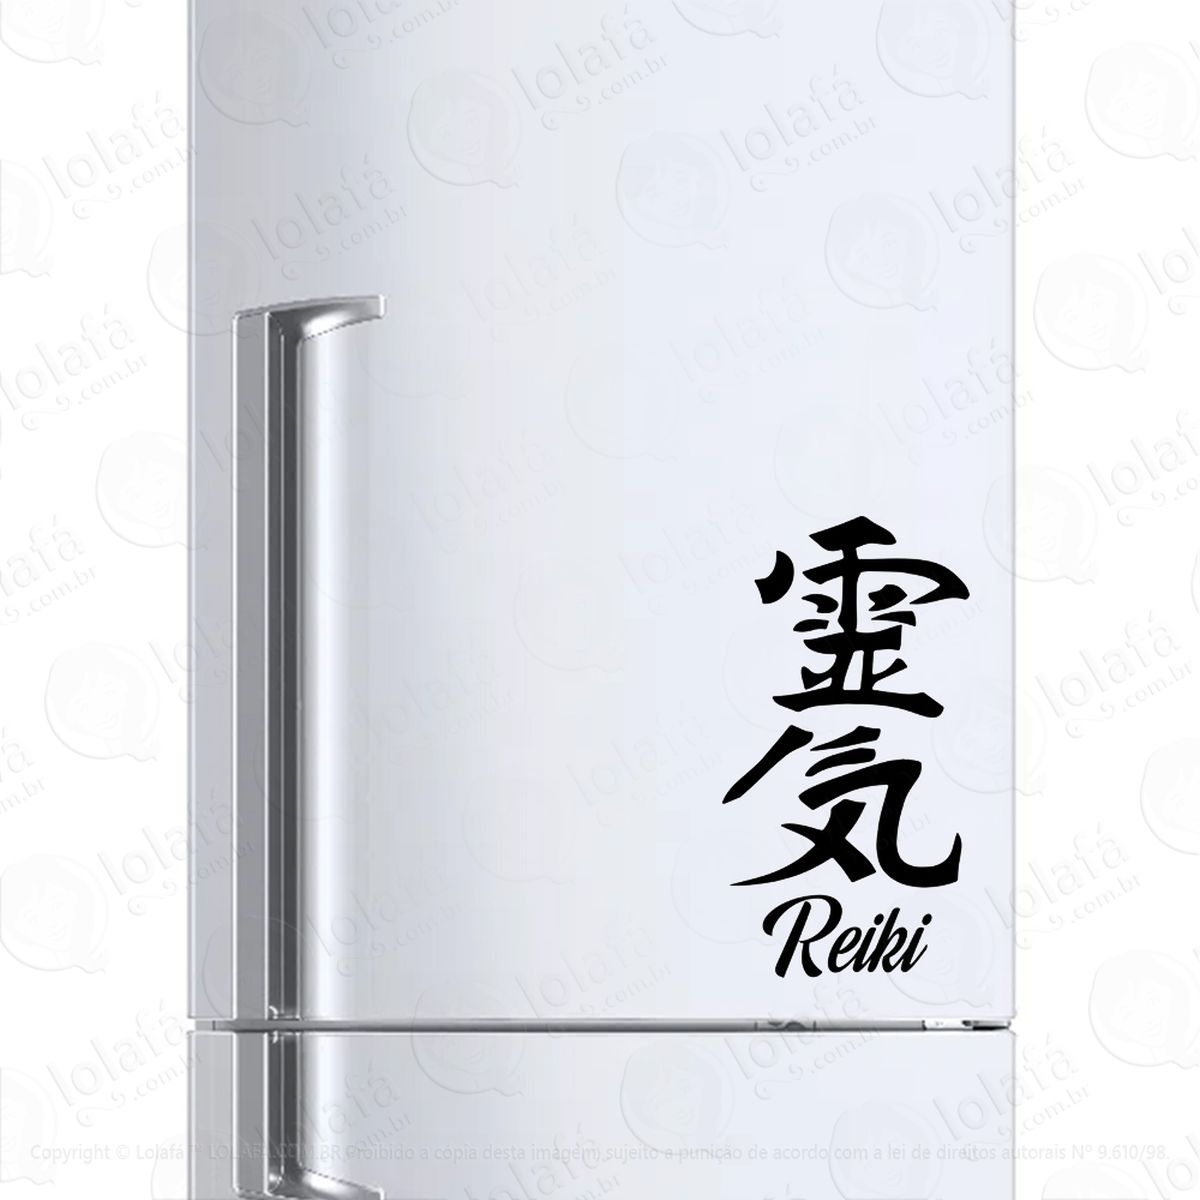 adesivo de geladeira reiki mod:6533